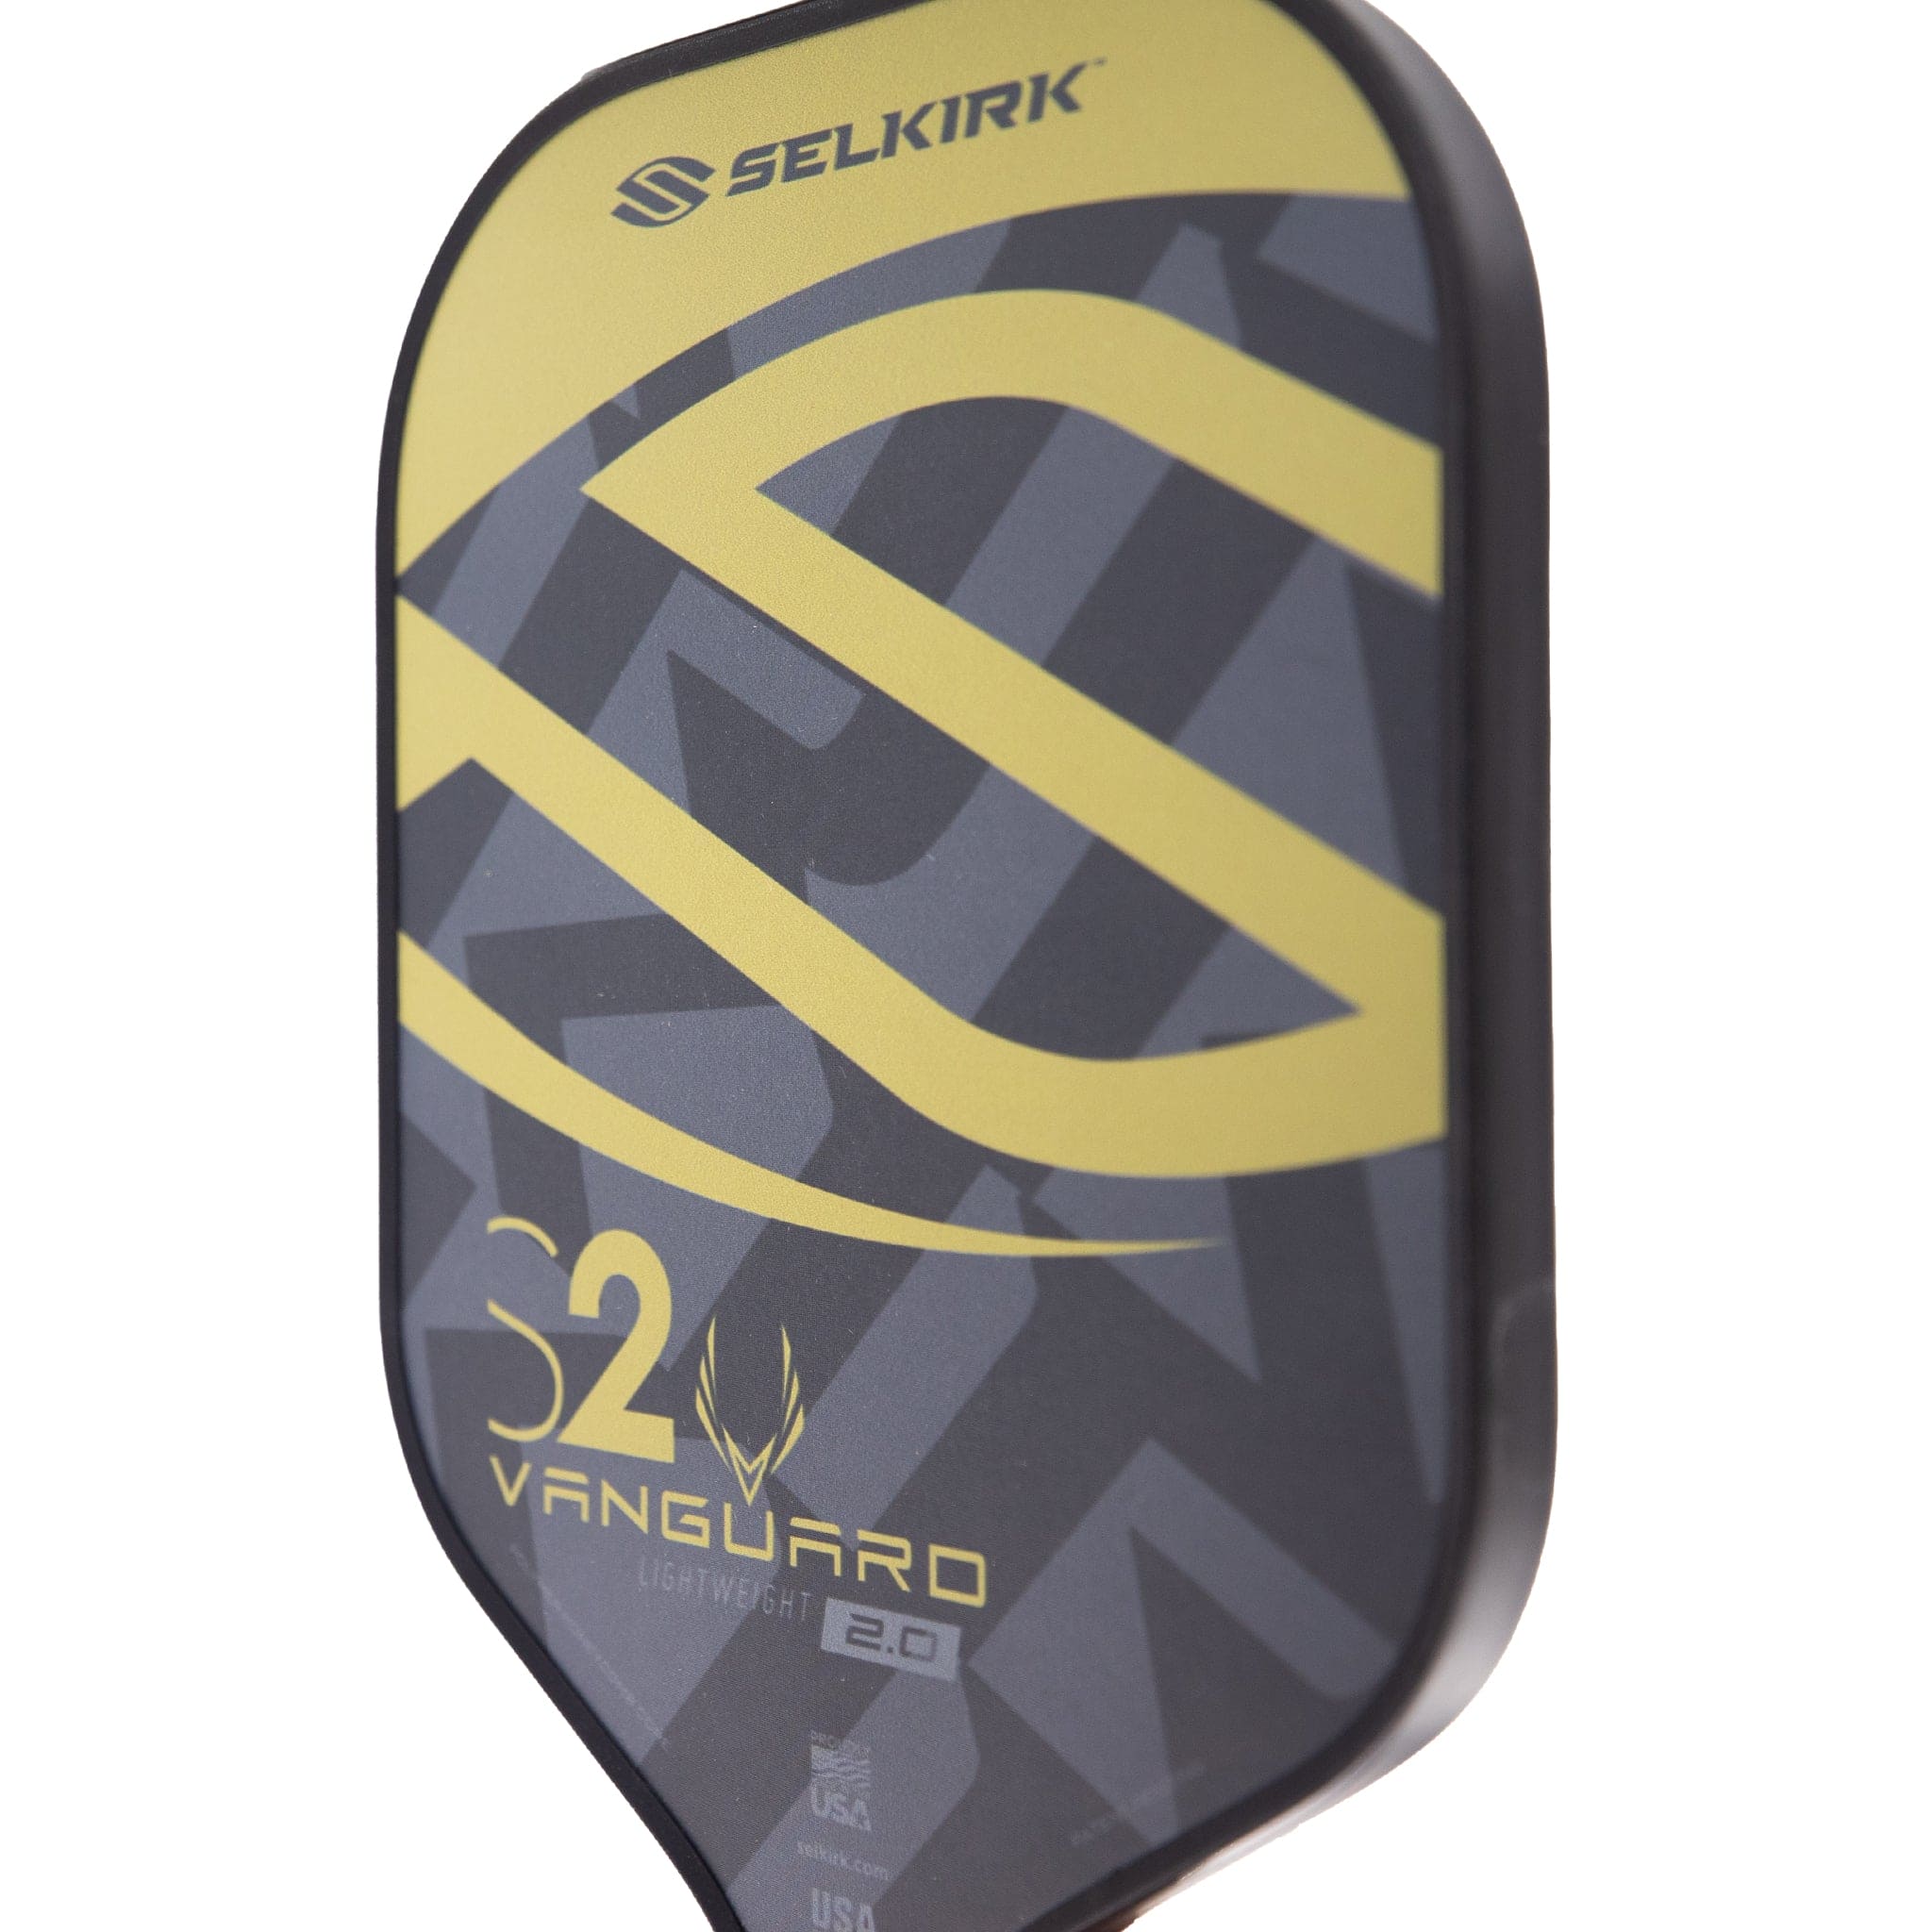 Selkirk S2 Vanguard 2.0 Lightweight Pre-Owned